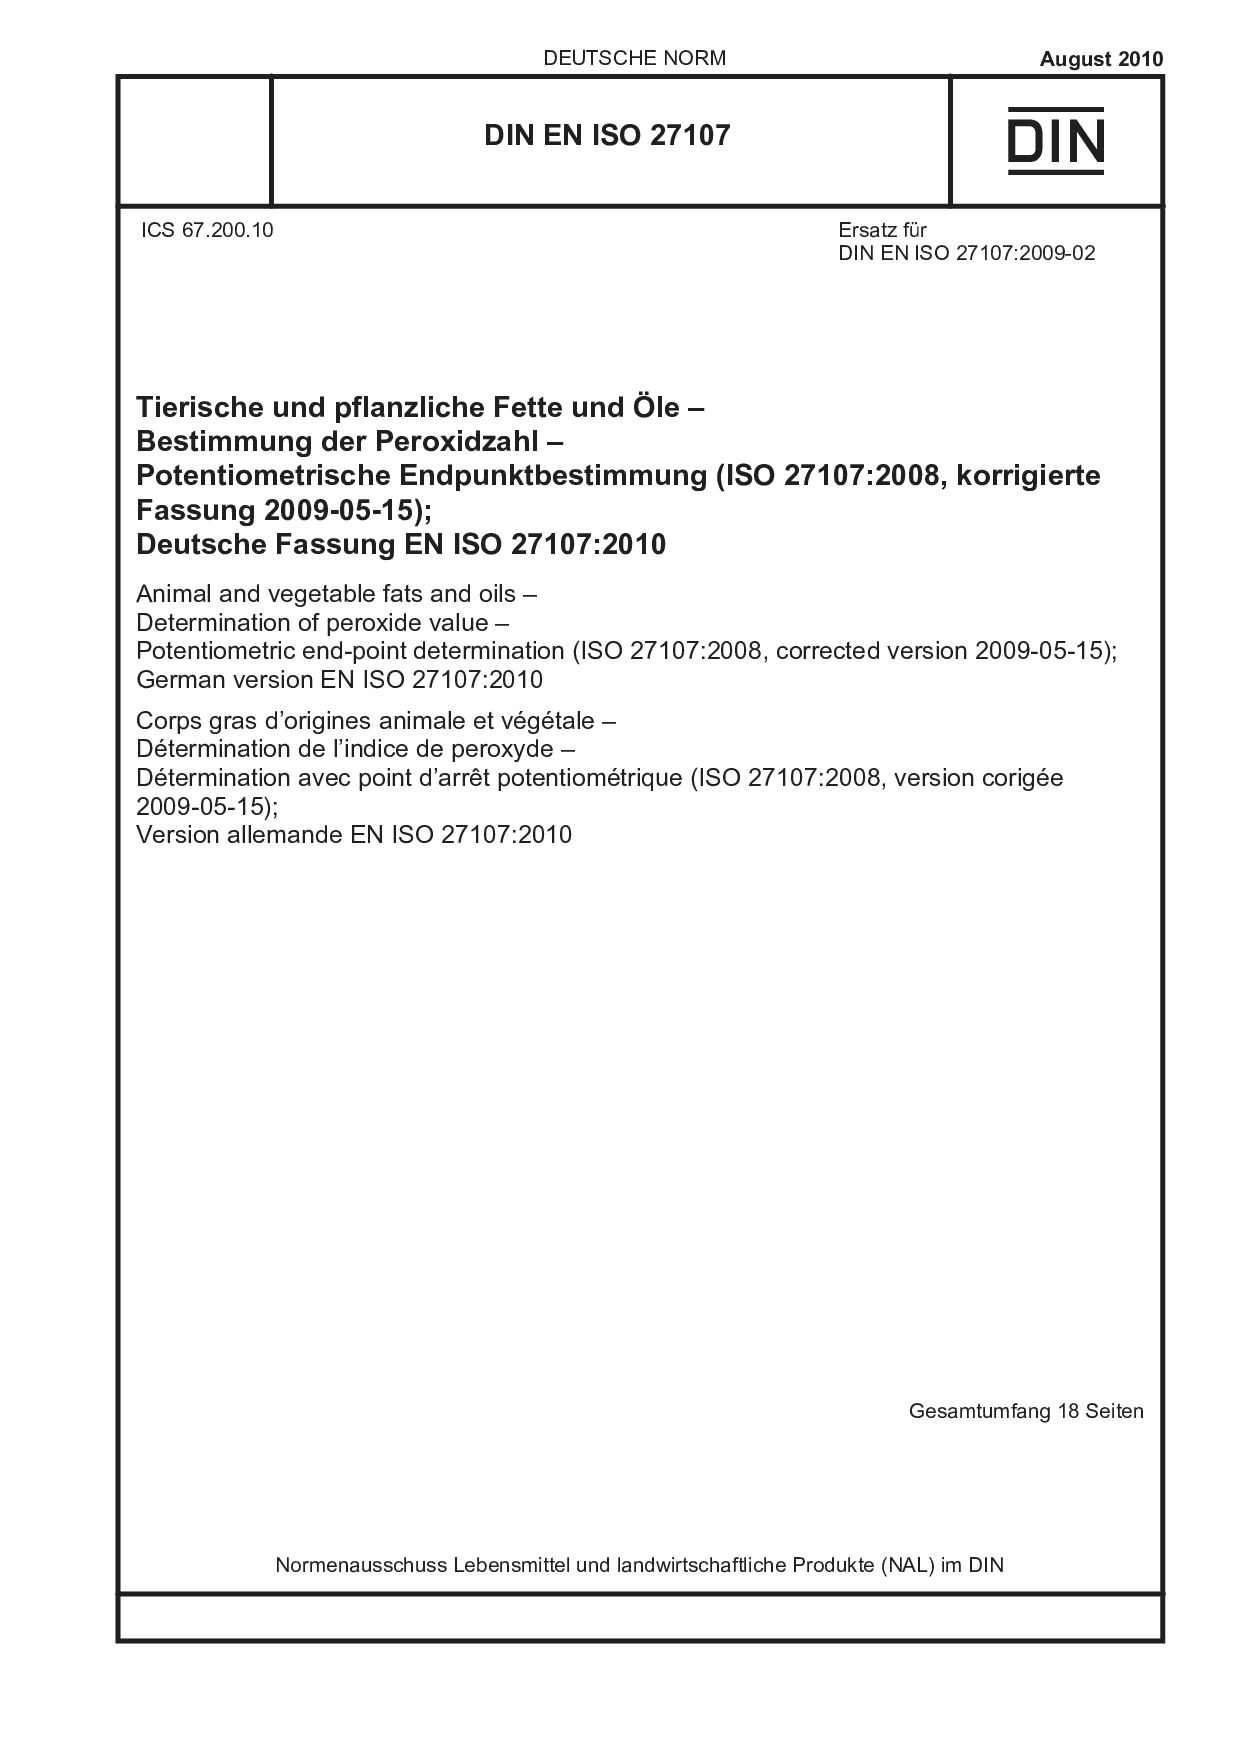 DIN EN ISO 27107:2010封面图